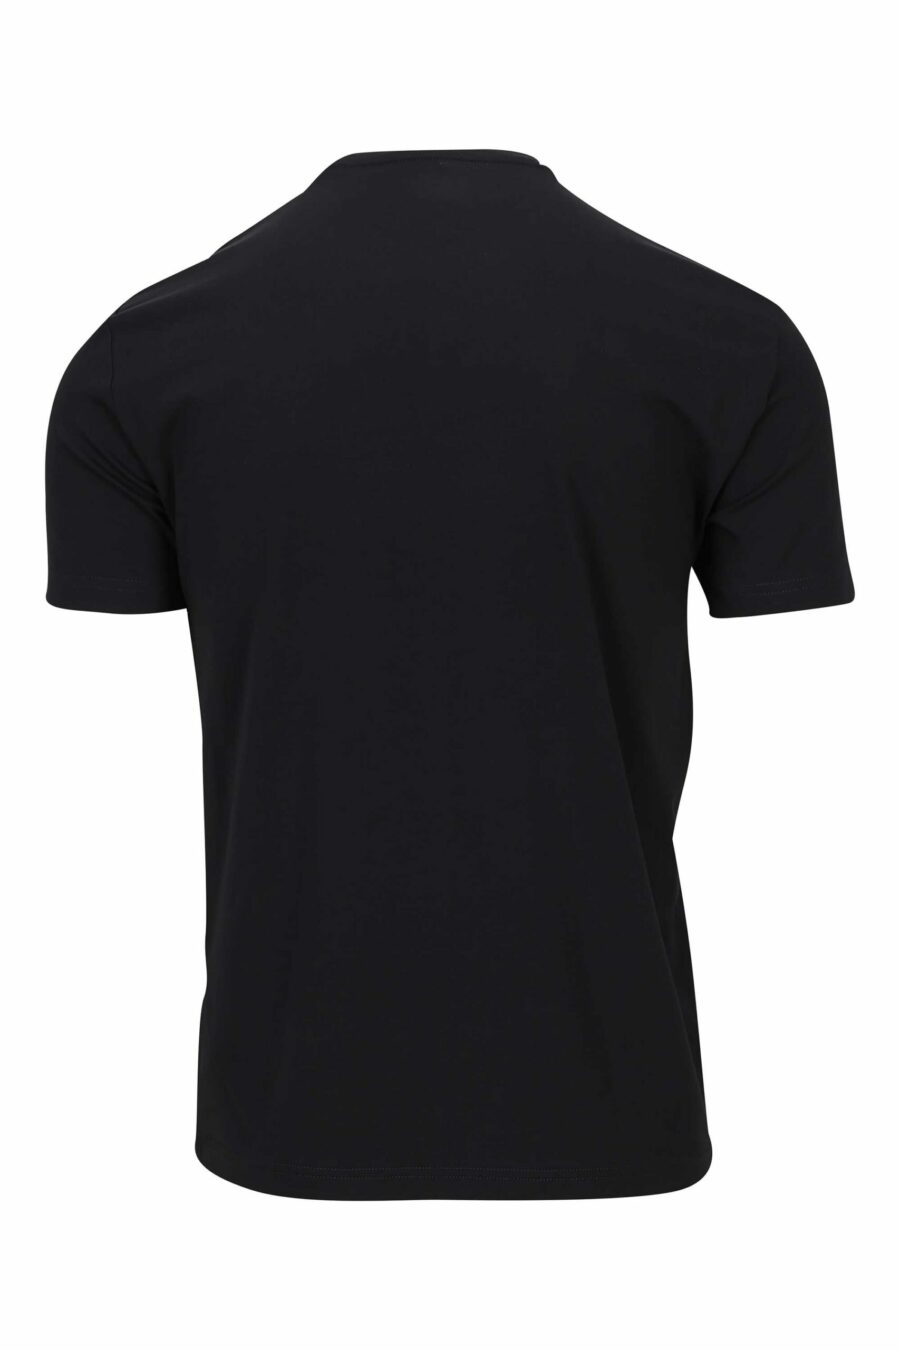 T-shirt schwarz mit blauem "lux identity" mix maxilogo - 8056787953161 1 skaliert